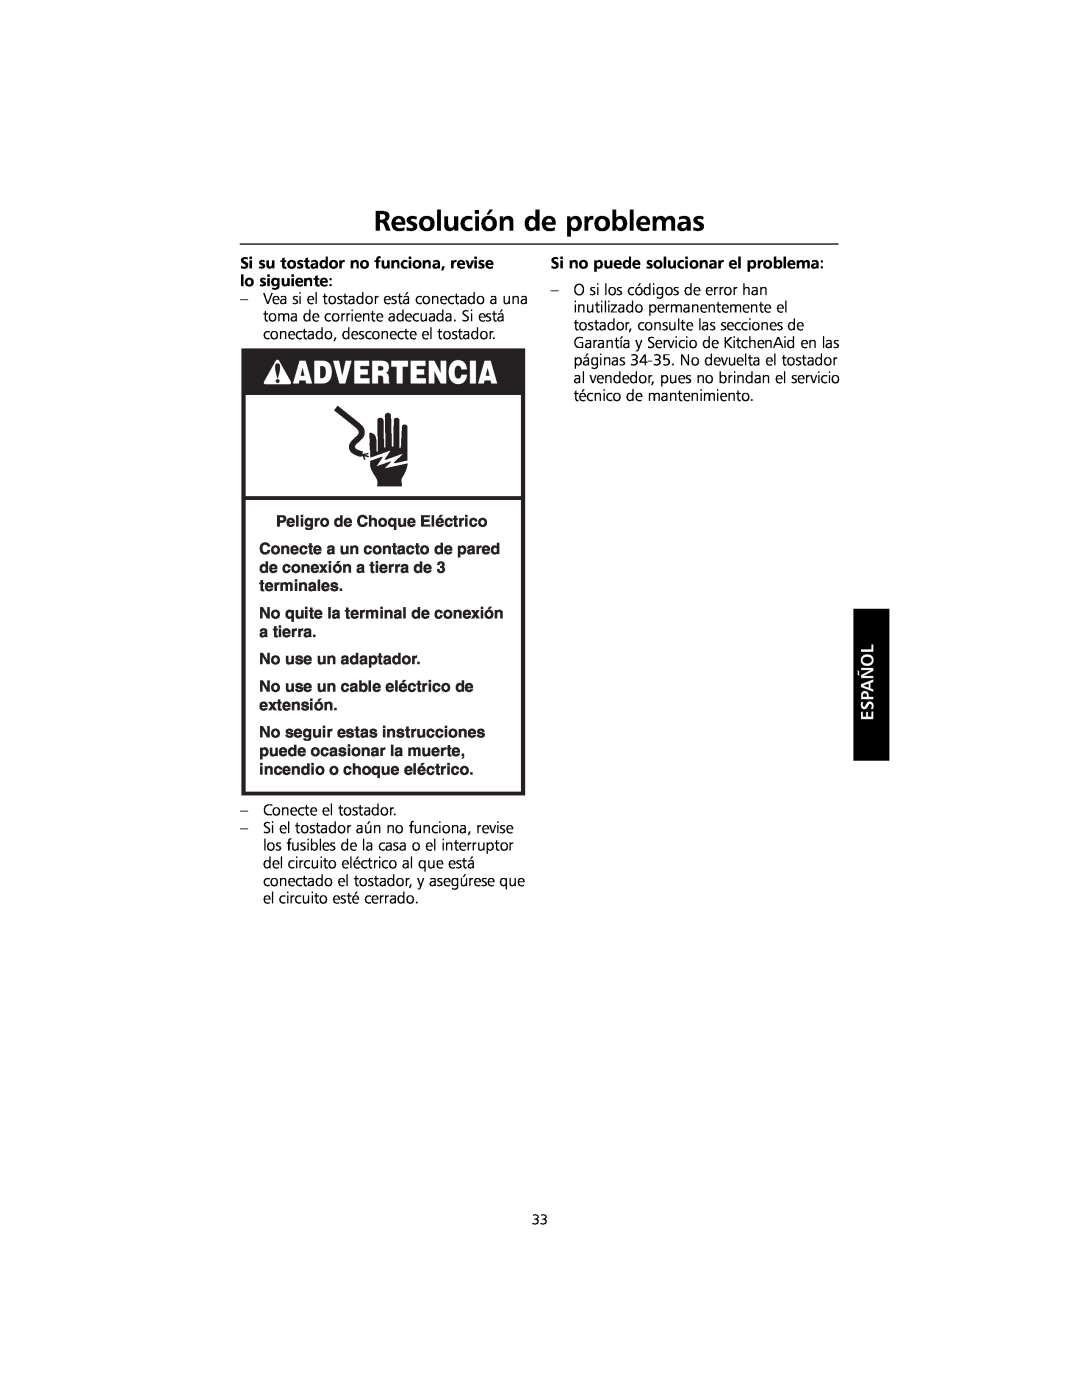 KitchenAid KMTT400 manual Resolución de problemas, Advertencia, Español, Peligro de Choque Eléctrico, No use un adaptador 